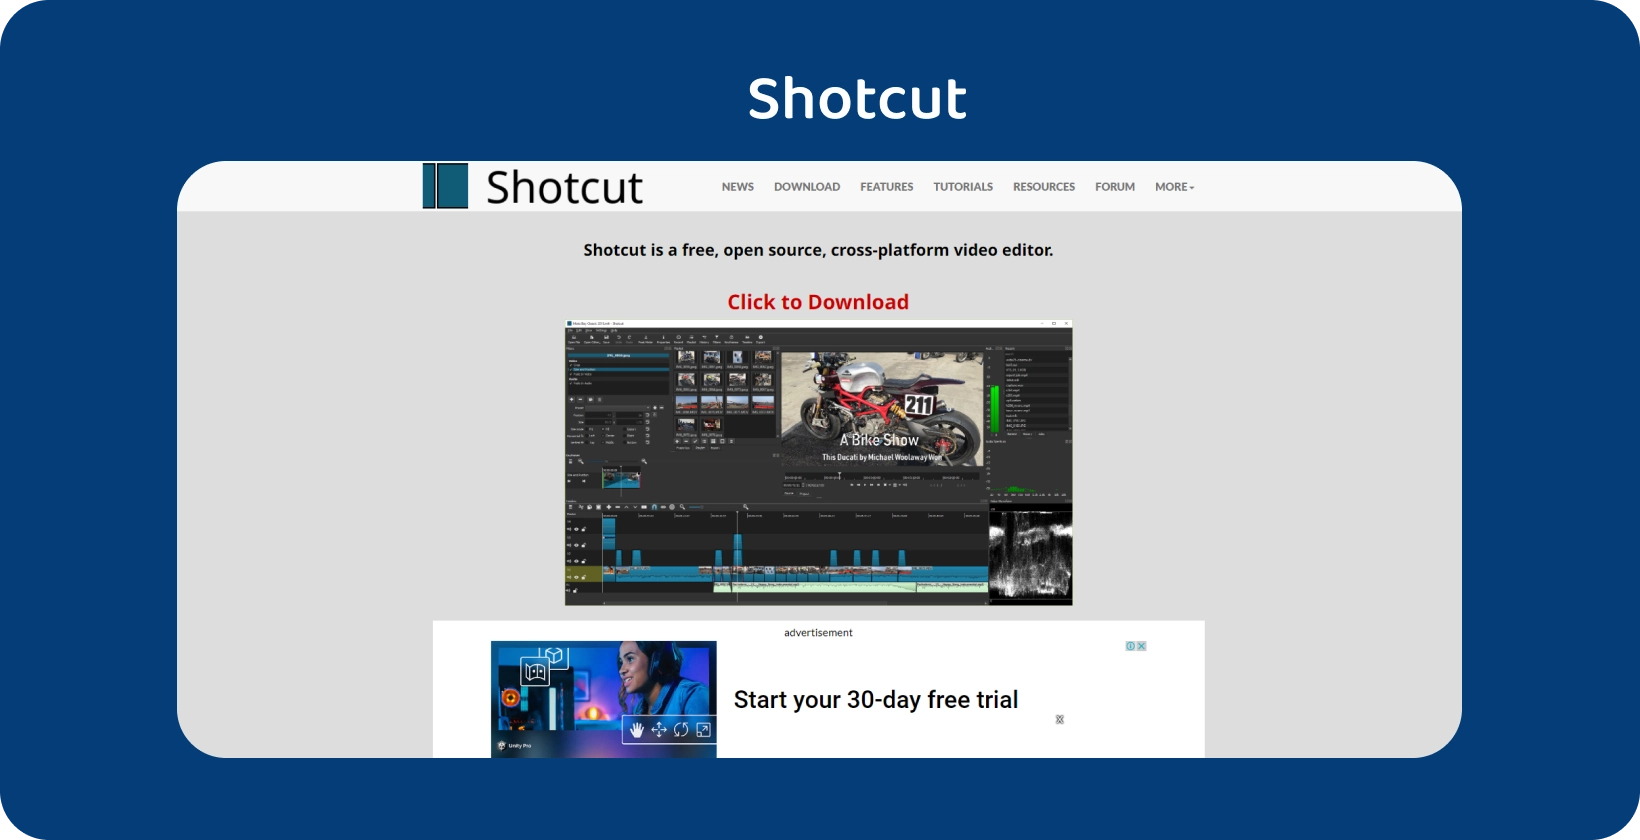 Shotcut editorgrænseflade: En detaljeret motorcykelvideotidslinje med robuste redigeringsværktøjer tydeligt vist.